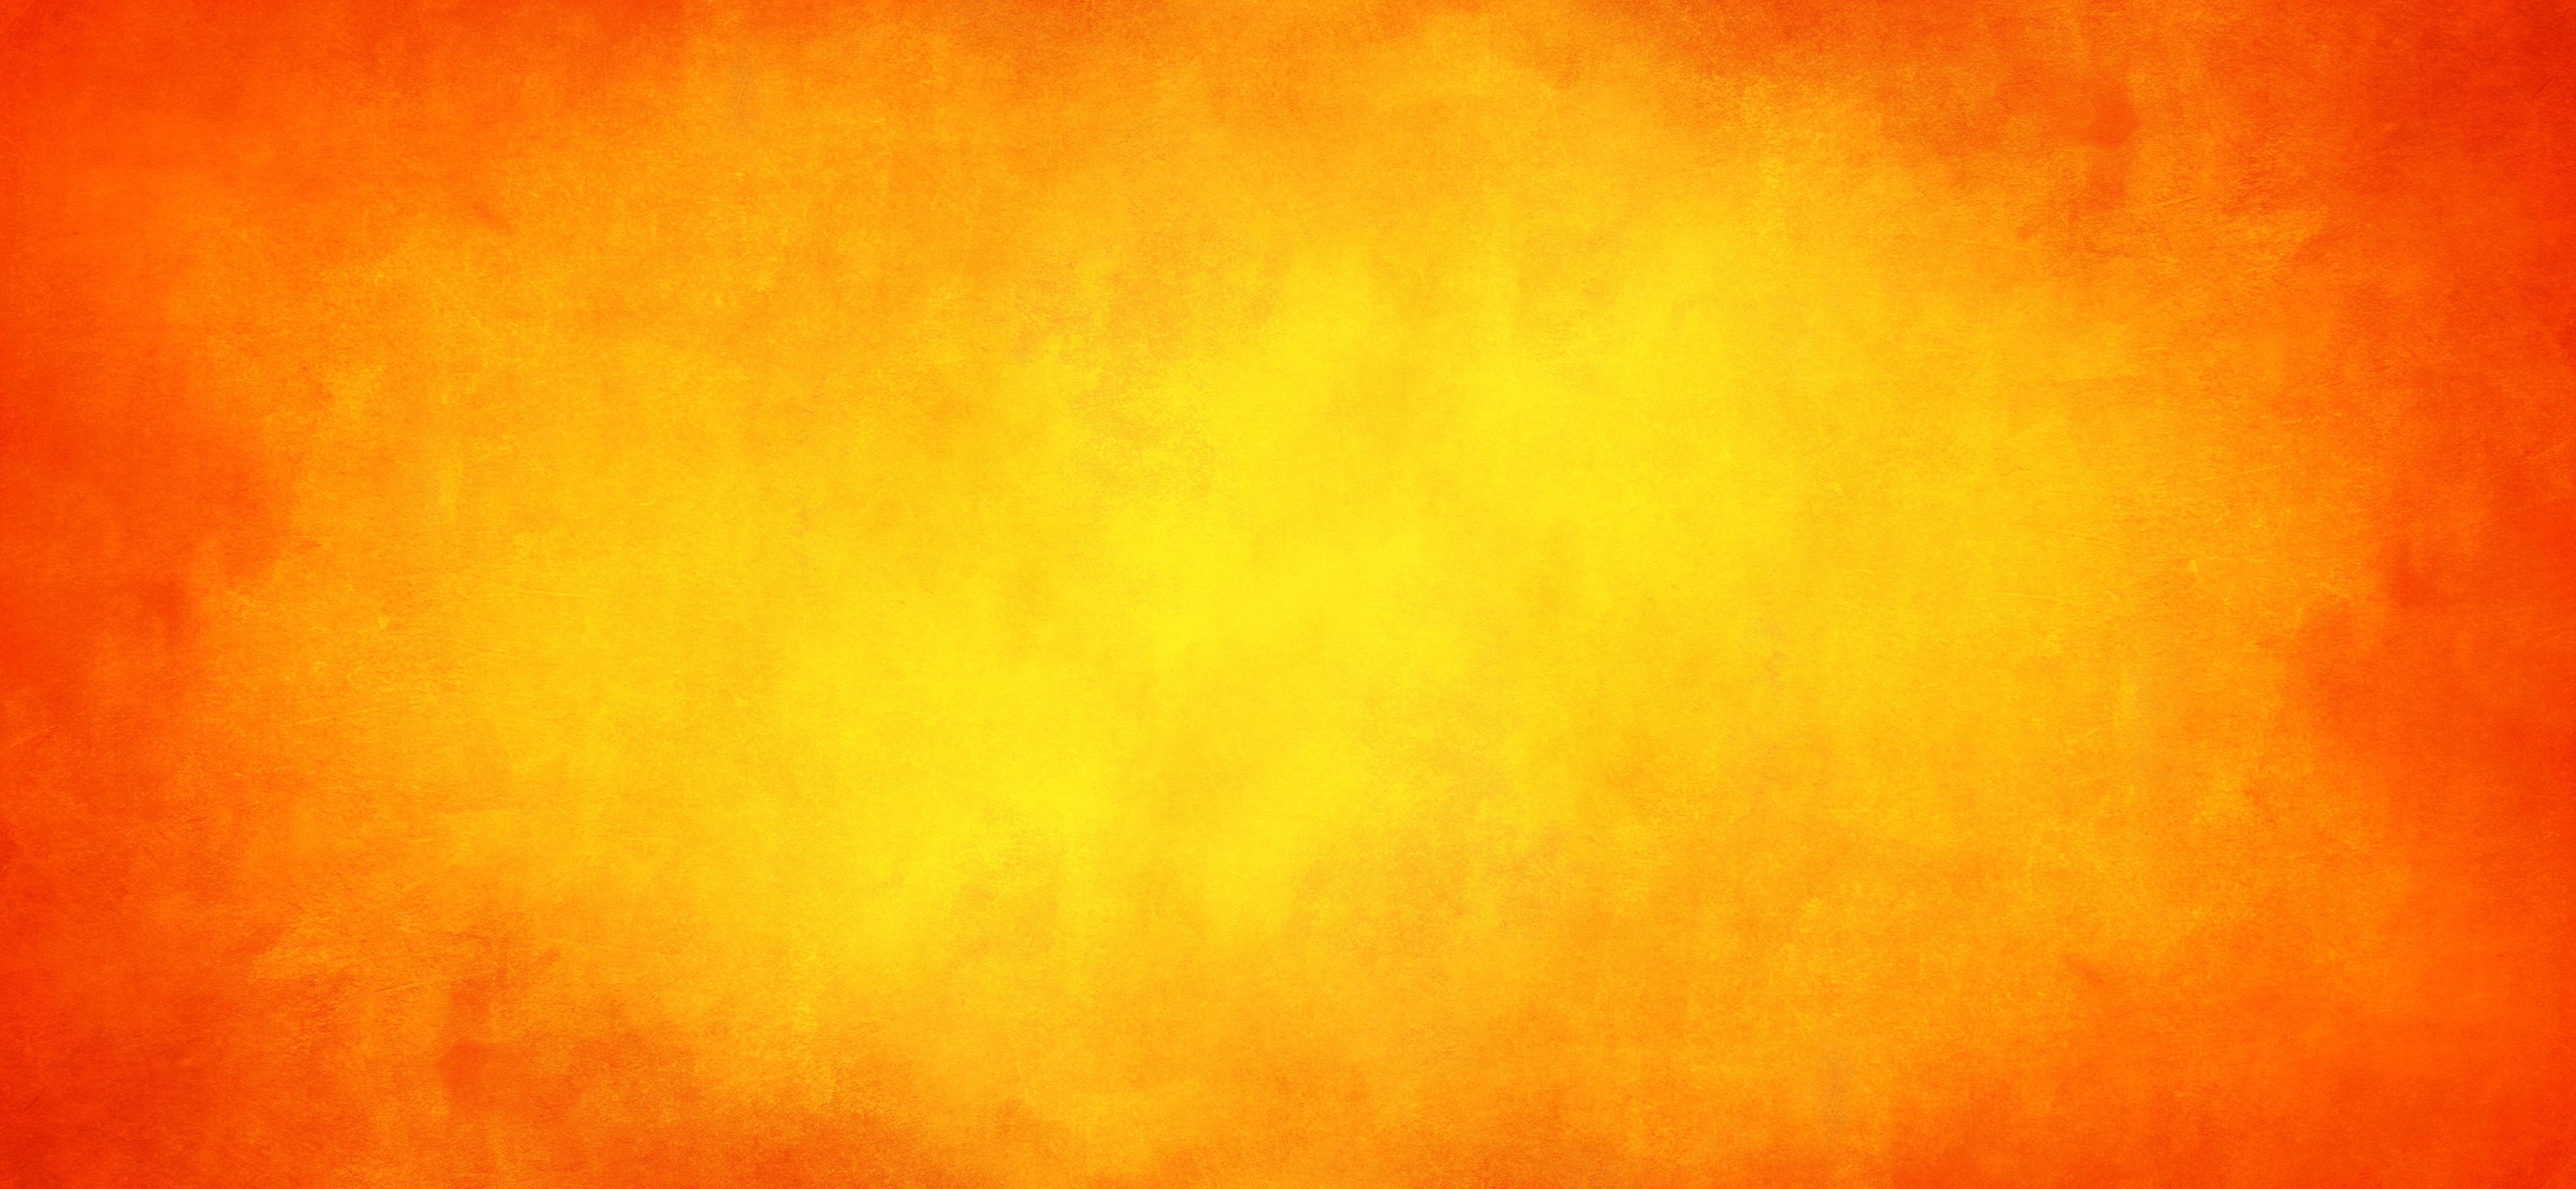 Nền giấy nước màu cam trừu tượng: Nền giấy màu sắc này sẽ khiến cho bất kỳ tác phẩm nghệ thuật nào của bạn trông thật sự độc đáo và tuyệt vời. Bức ảnh này thể hiện sự kênh đưa màu cam một cách trừu tượng trên nền giấy, thật đẹp và cuốn hút.